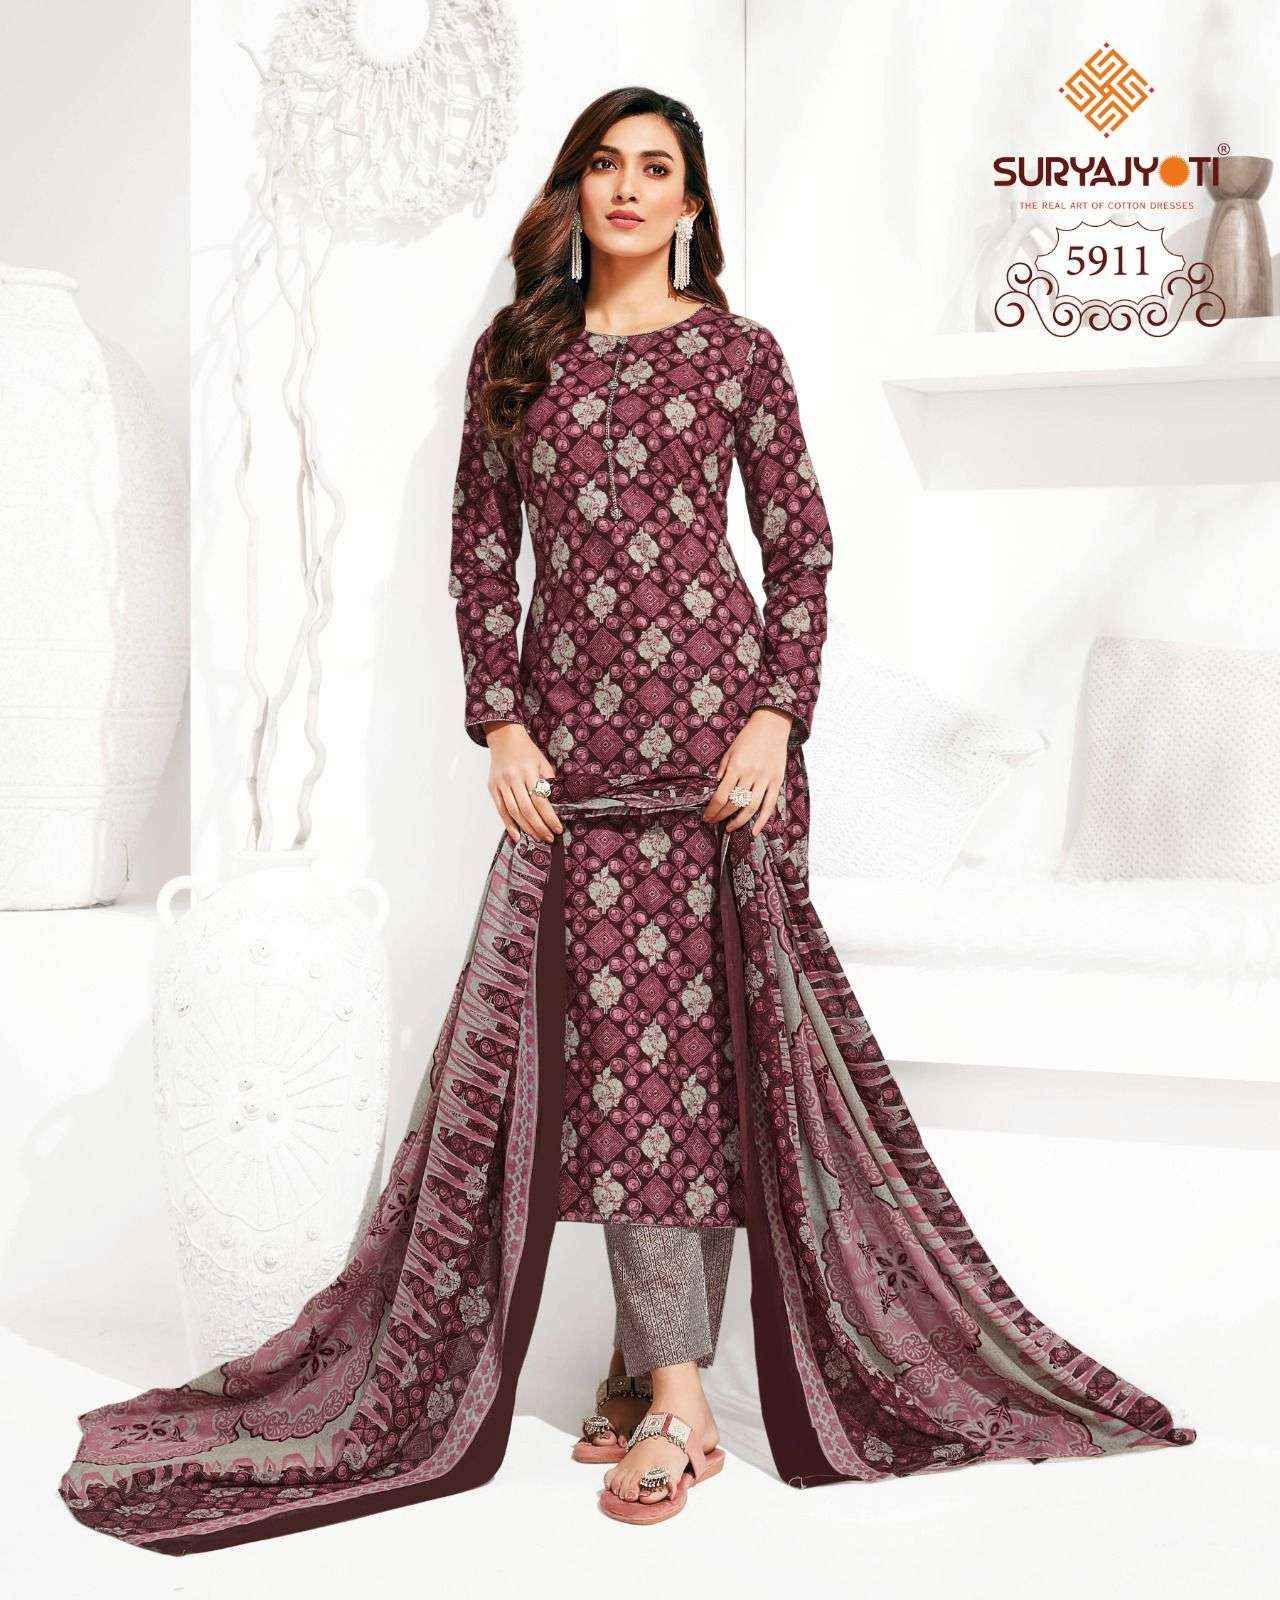 Suryajyoti Trendy Cotton Vol 59 Cotton Dress Material Best Cotton